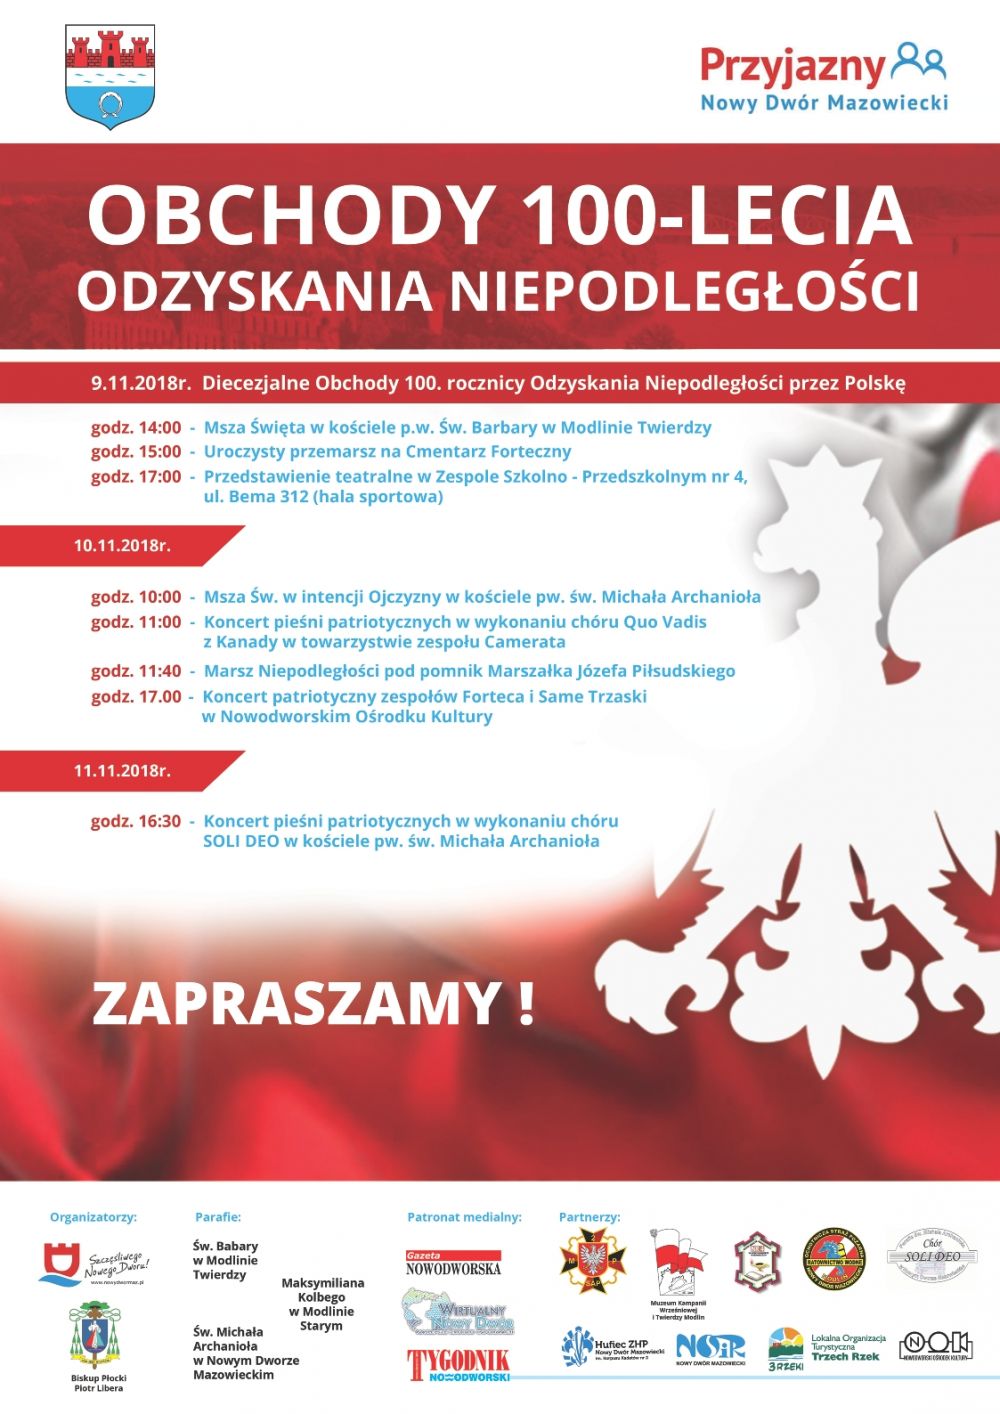 9-11.11.2018 r. zapraszamy na obchody 100-lecia Odzyskania Niepodległości przez Polskę.